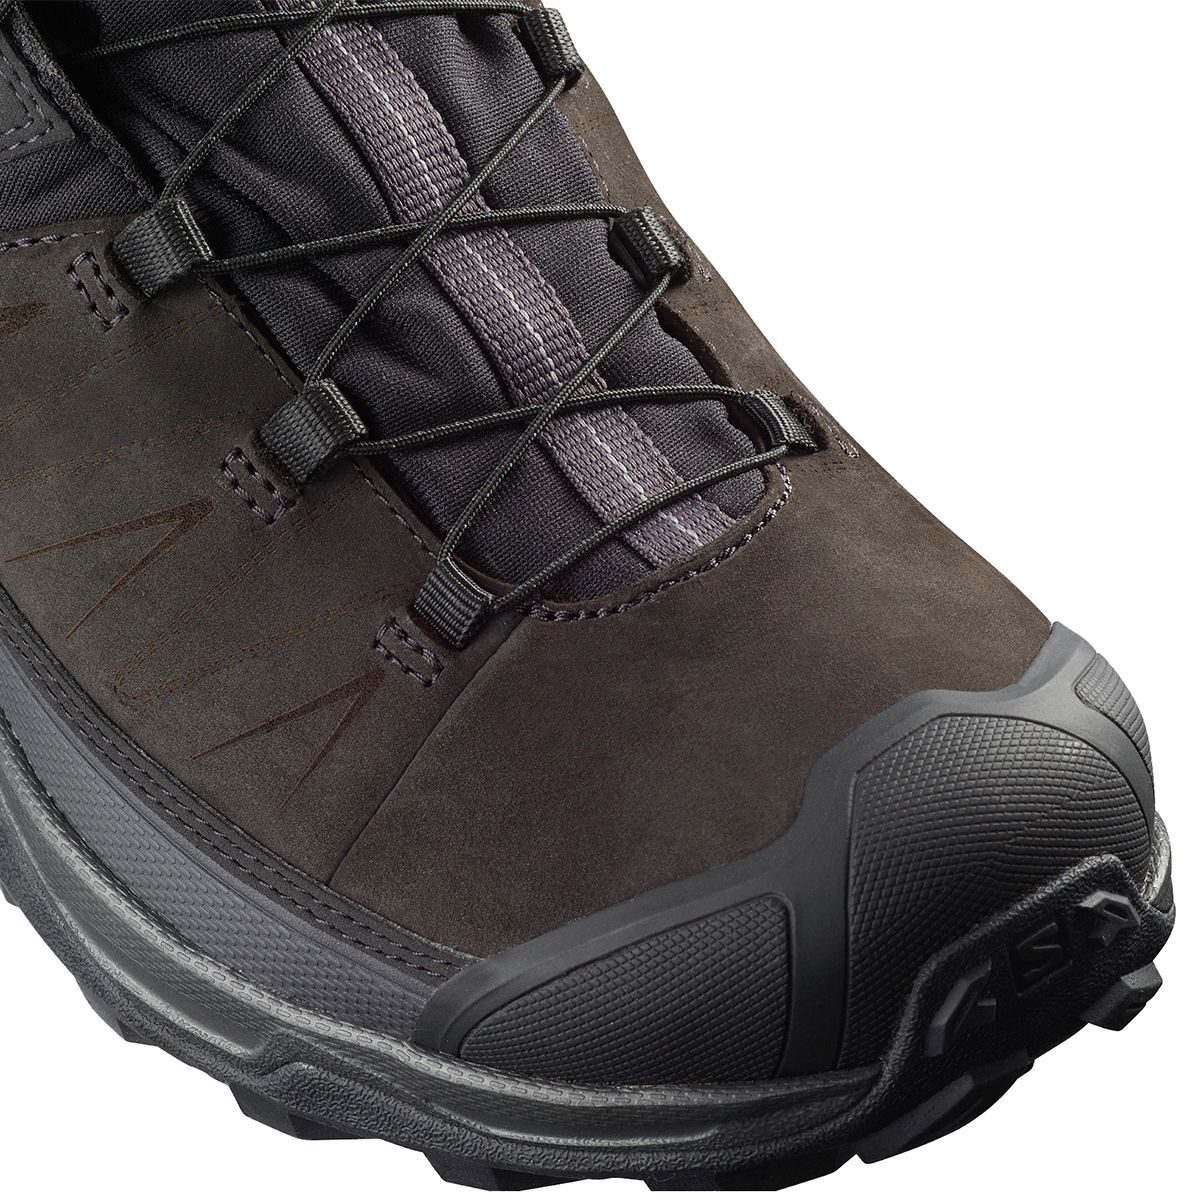 Salomon X Ultra 3 LTR GTX Hiking Shoe - Men's - Footwear